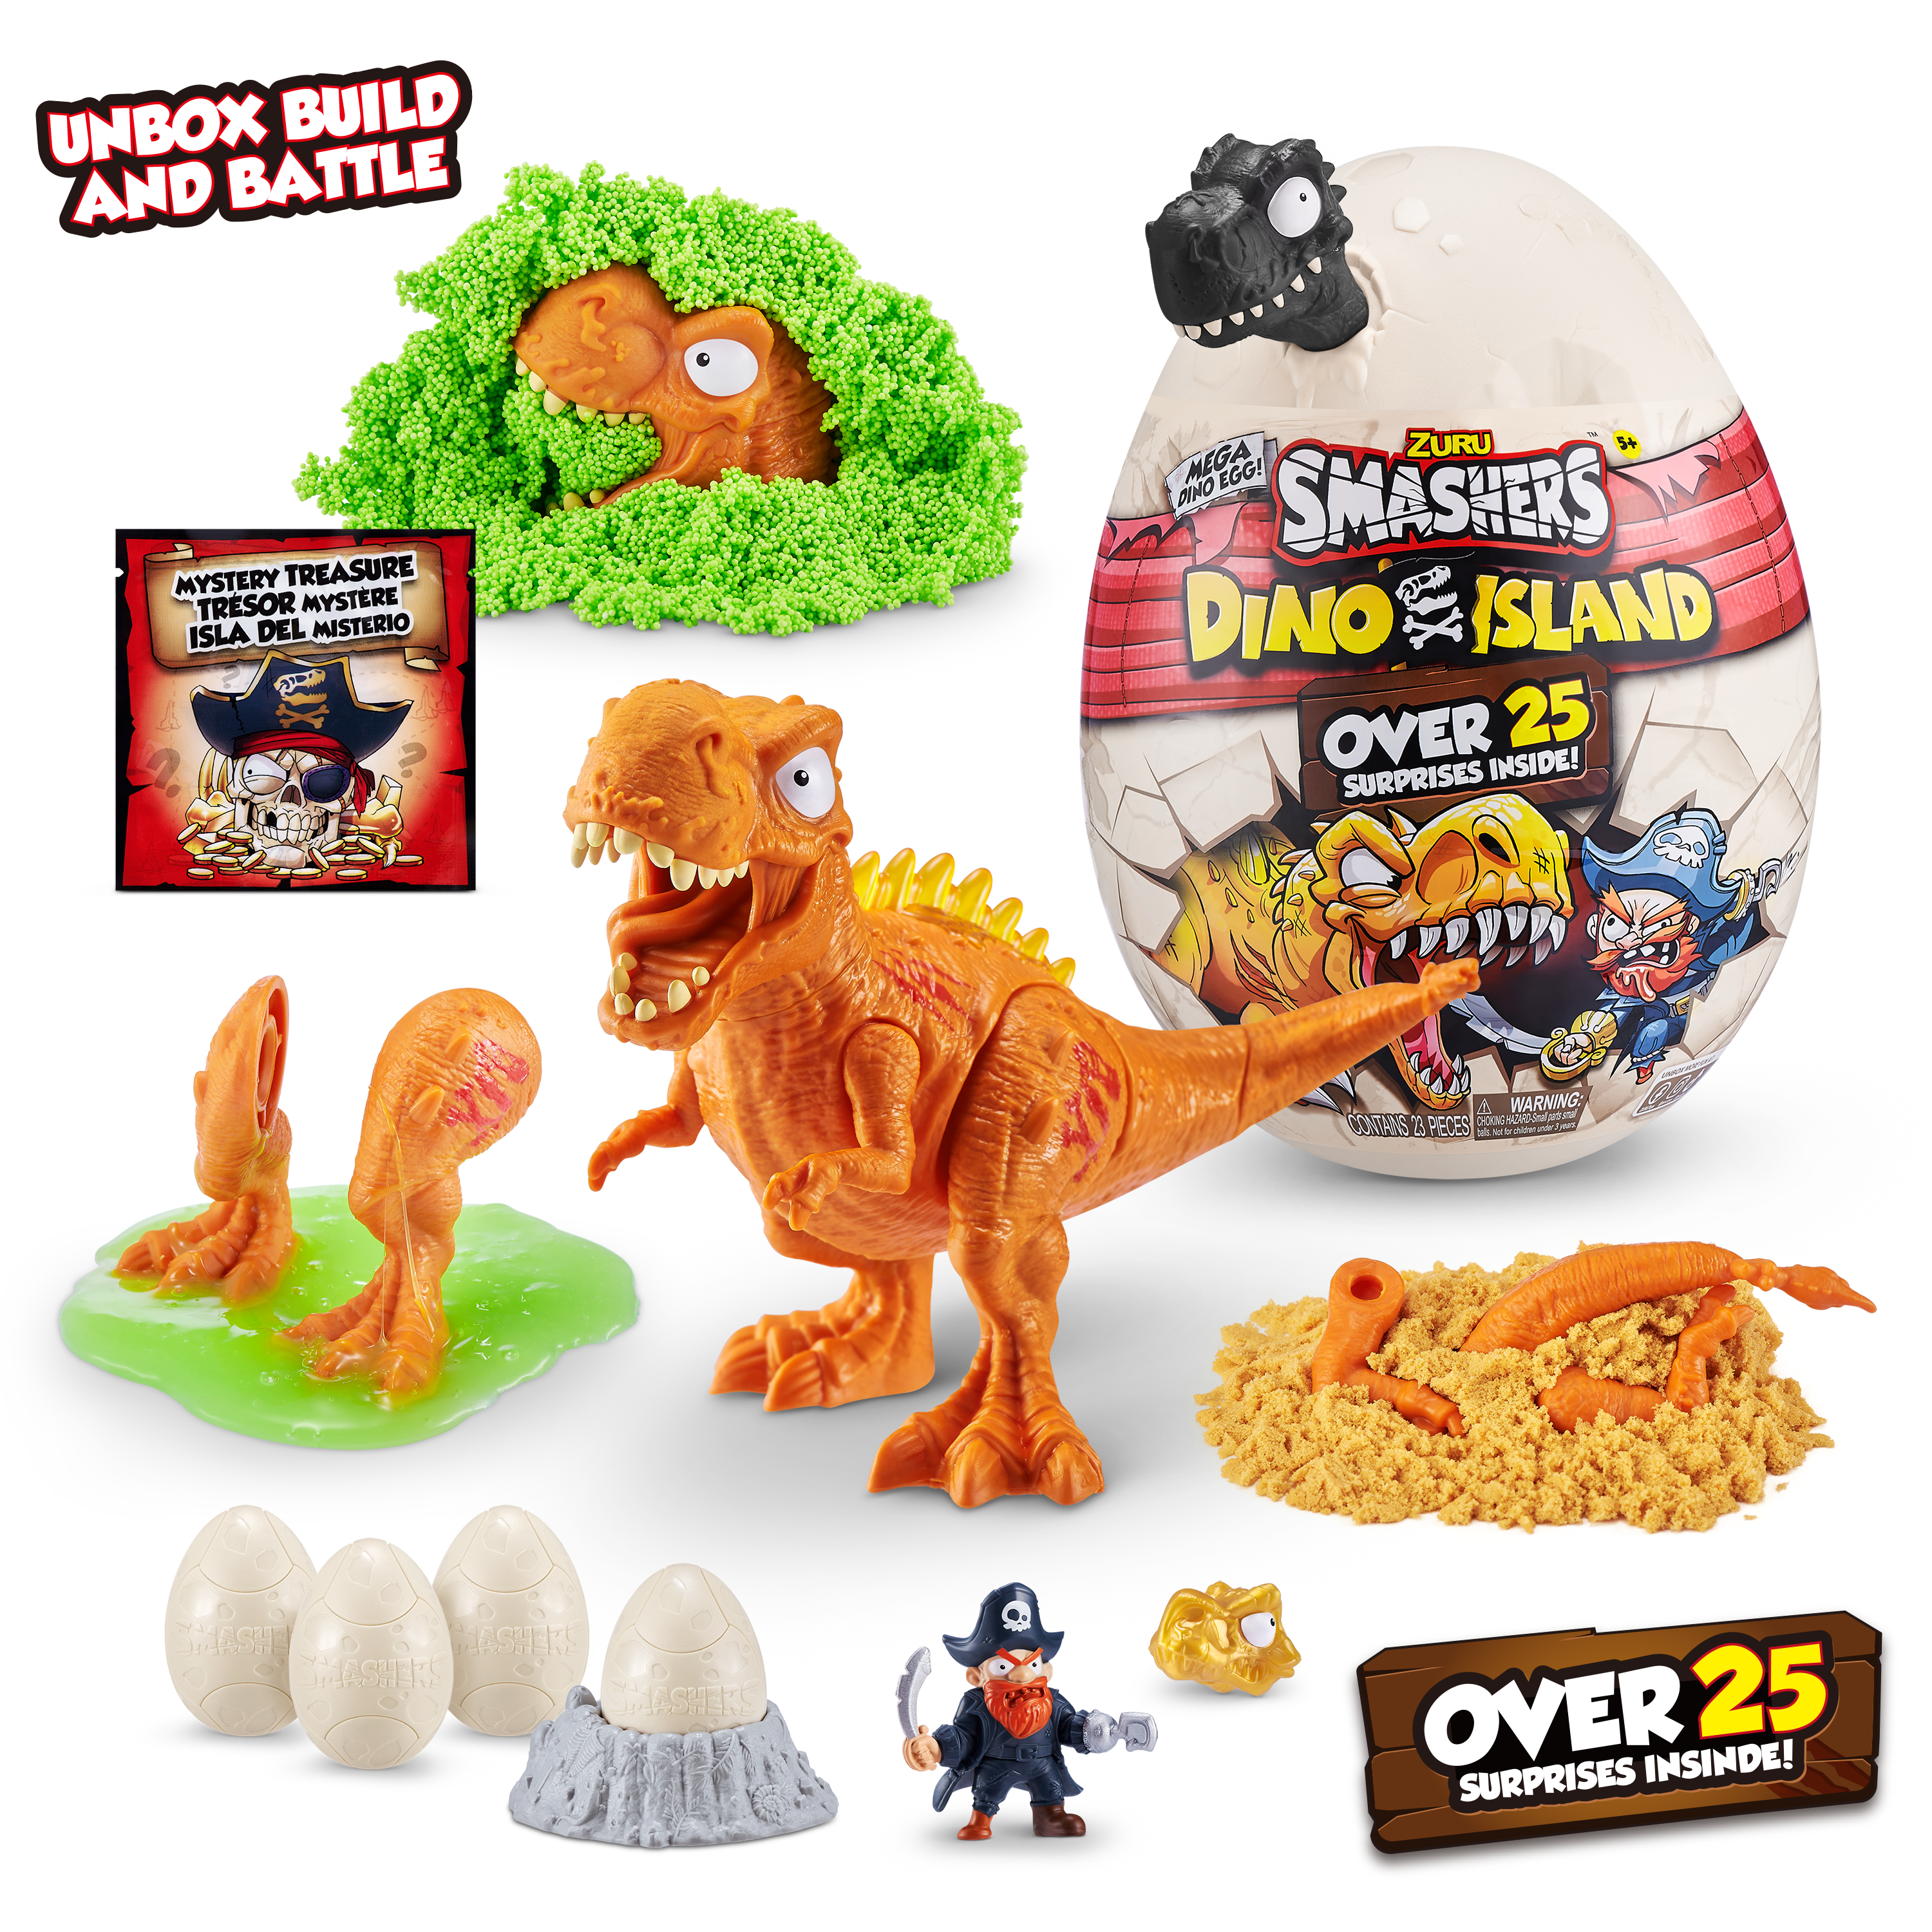 Игровой набор Smashers Dino Island сюрприз в яйце Большое яйцо, 25 сюрпризов— магазин-салютов.рус